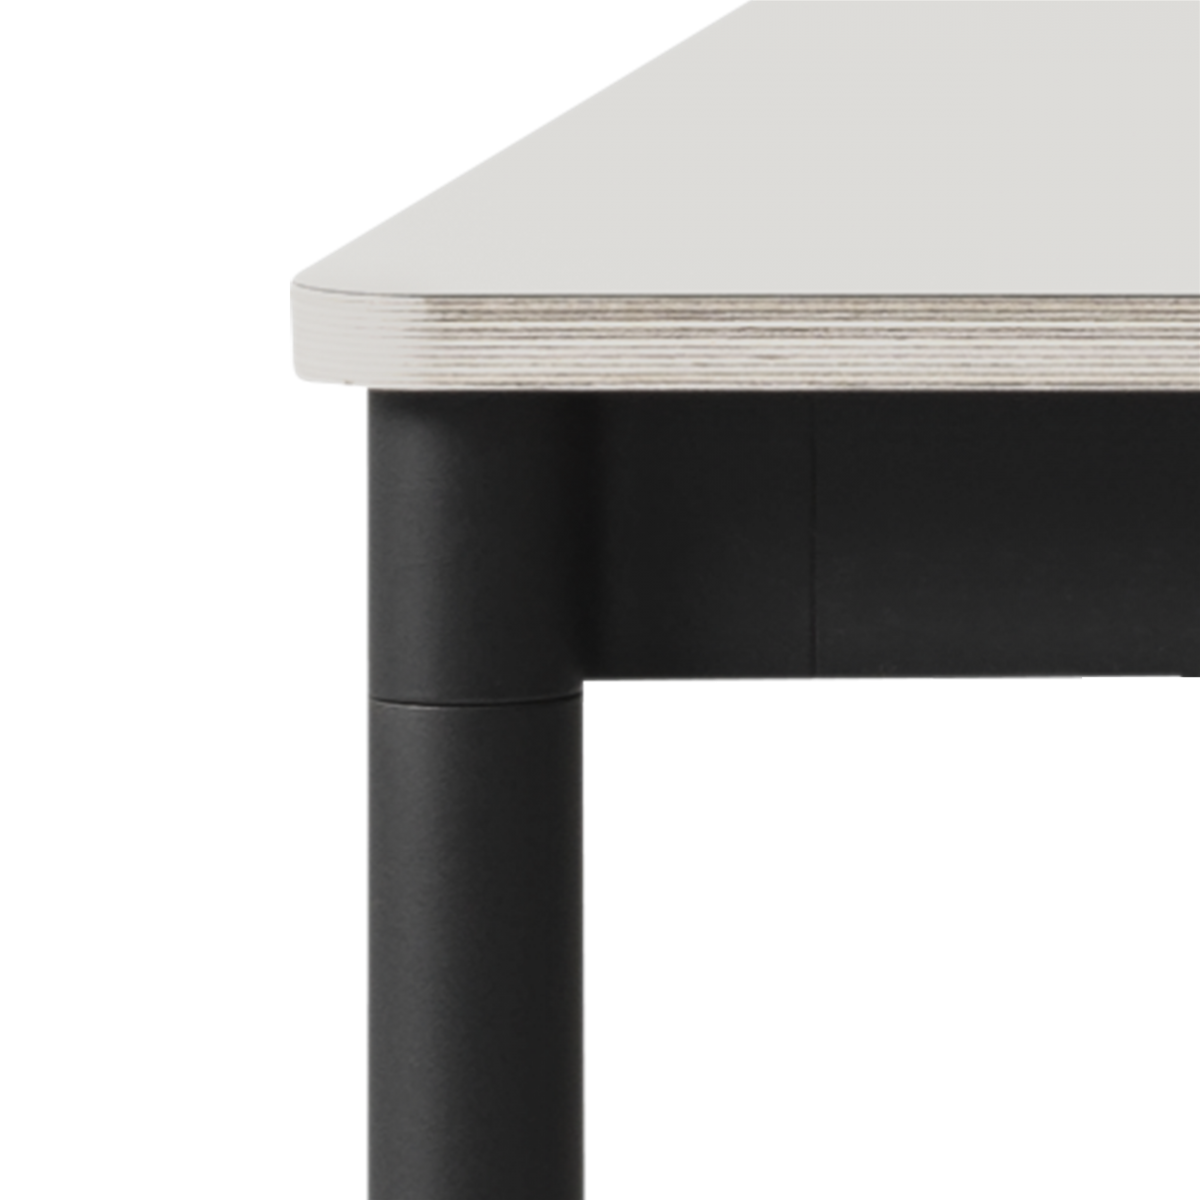 Blanc (stratifié) / Bois / Noir – Table Base 160 x 80 x H73 cm